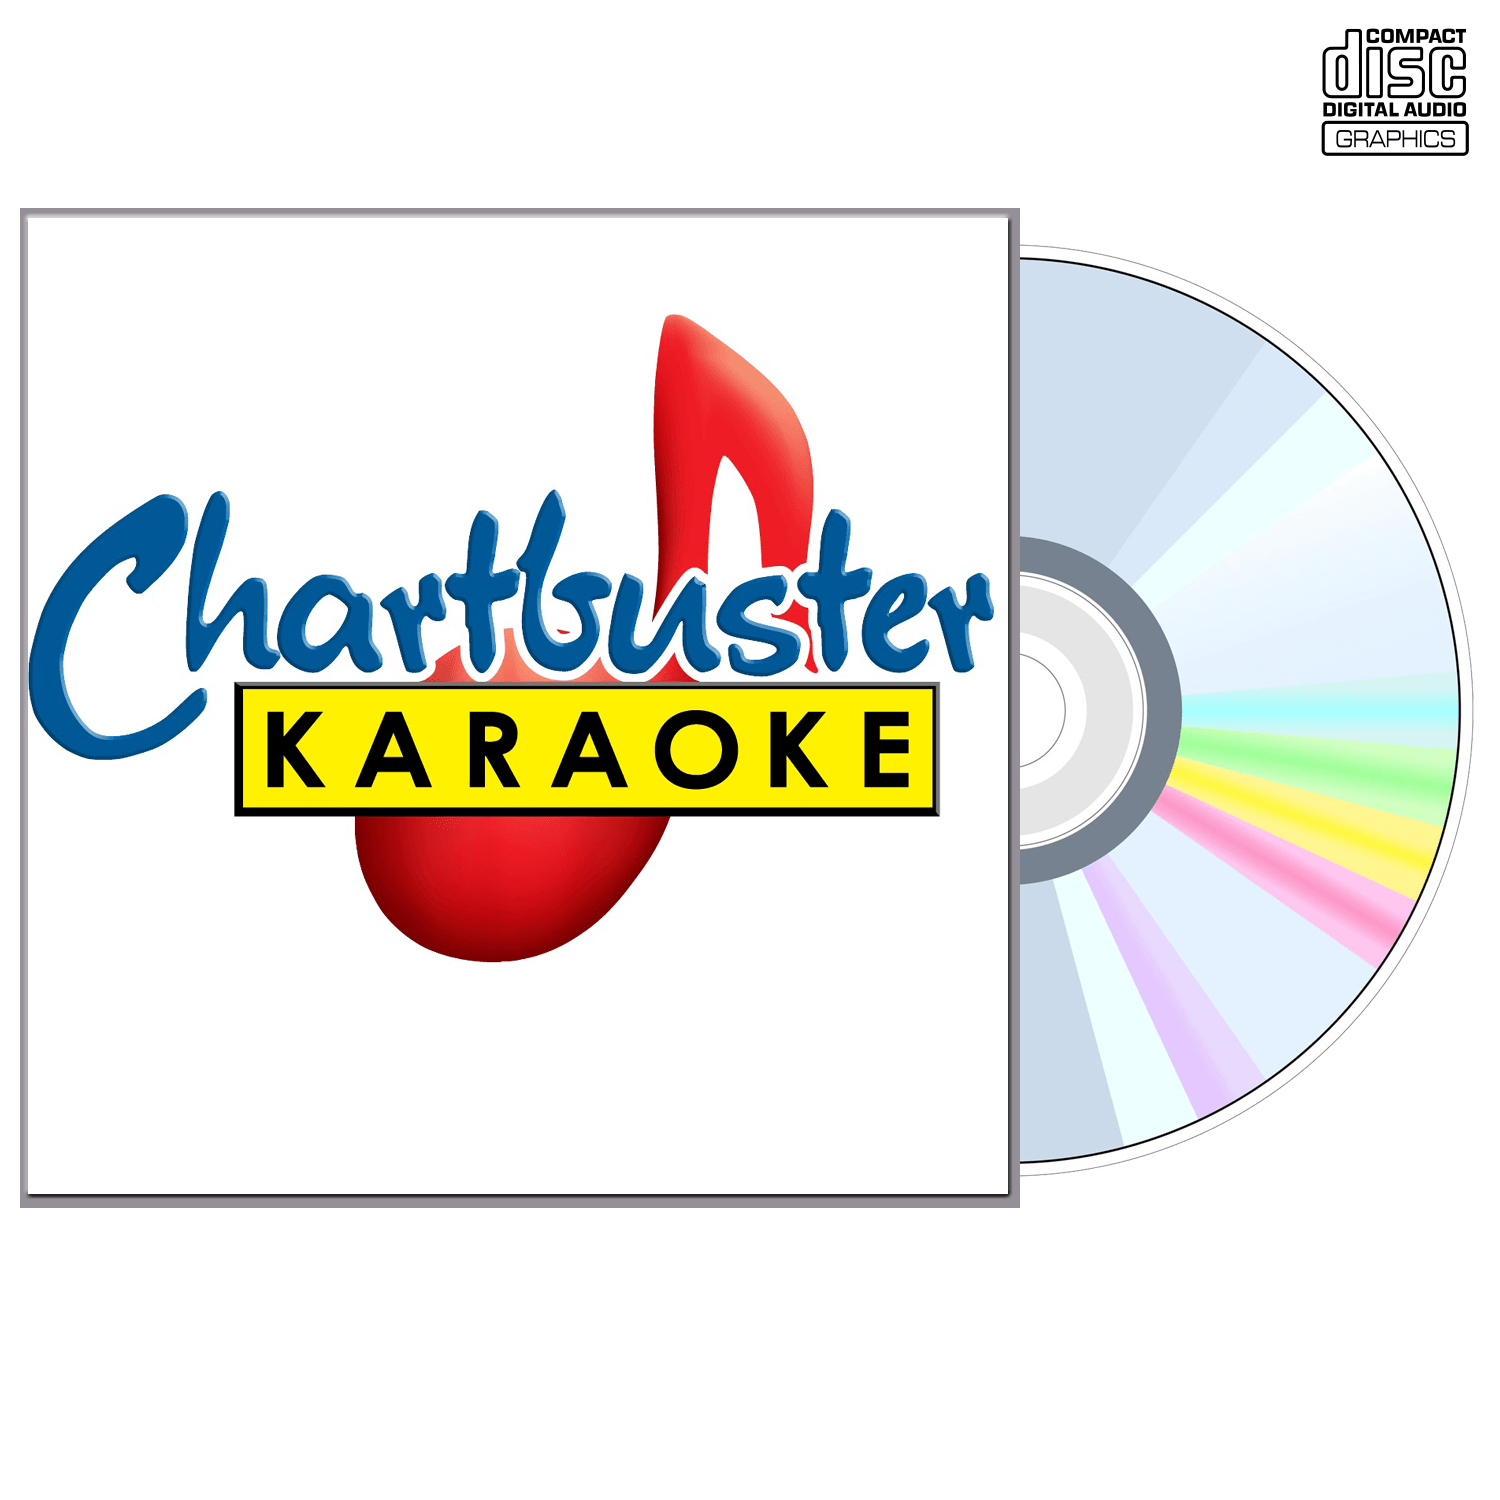 Barbra Streisand - CD+G - Chartbuster Karaoke - Karaoke Home Entertainment